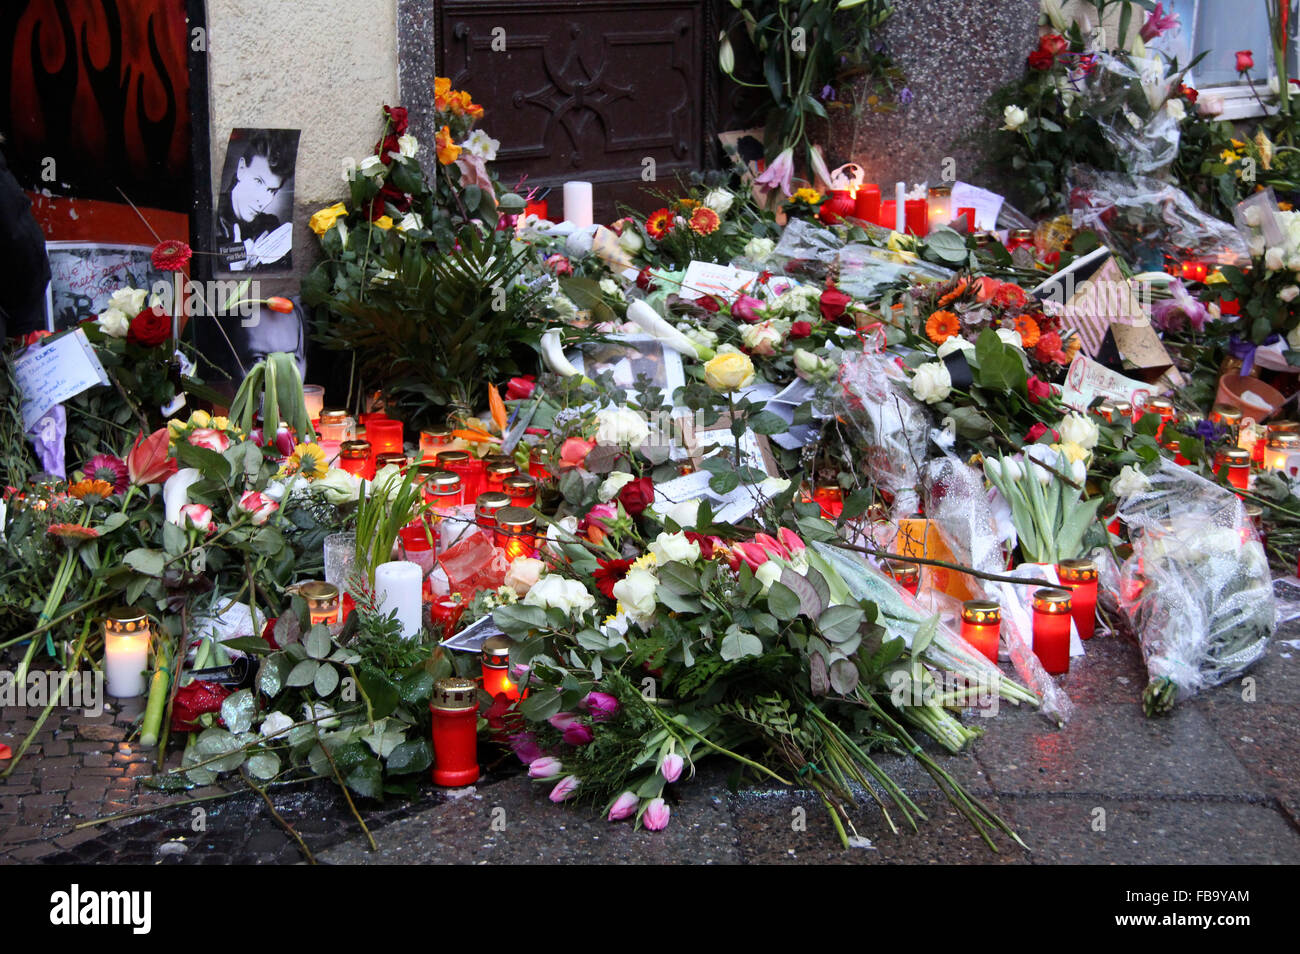 Berlin pleure la mort de leur ancien voisin David Bowie, qui a vécu à Berlin, en Allemagne de 1976 à 1978 sur la Hauptstrasse 155 dans Schoenberg. De nombreux fans a jeté des fleurs, des bougies et des cartes à l'extérieur de l'ancienne résidence de Bowie à Berlin./photo alliance Banque D'Images